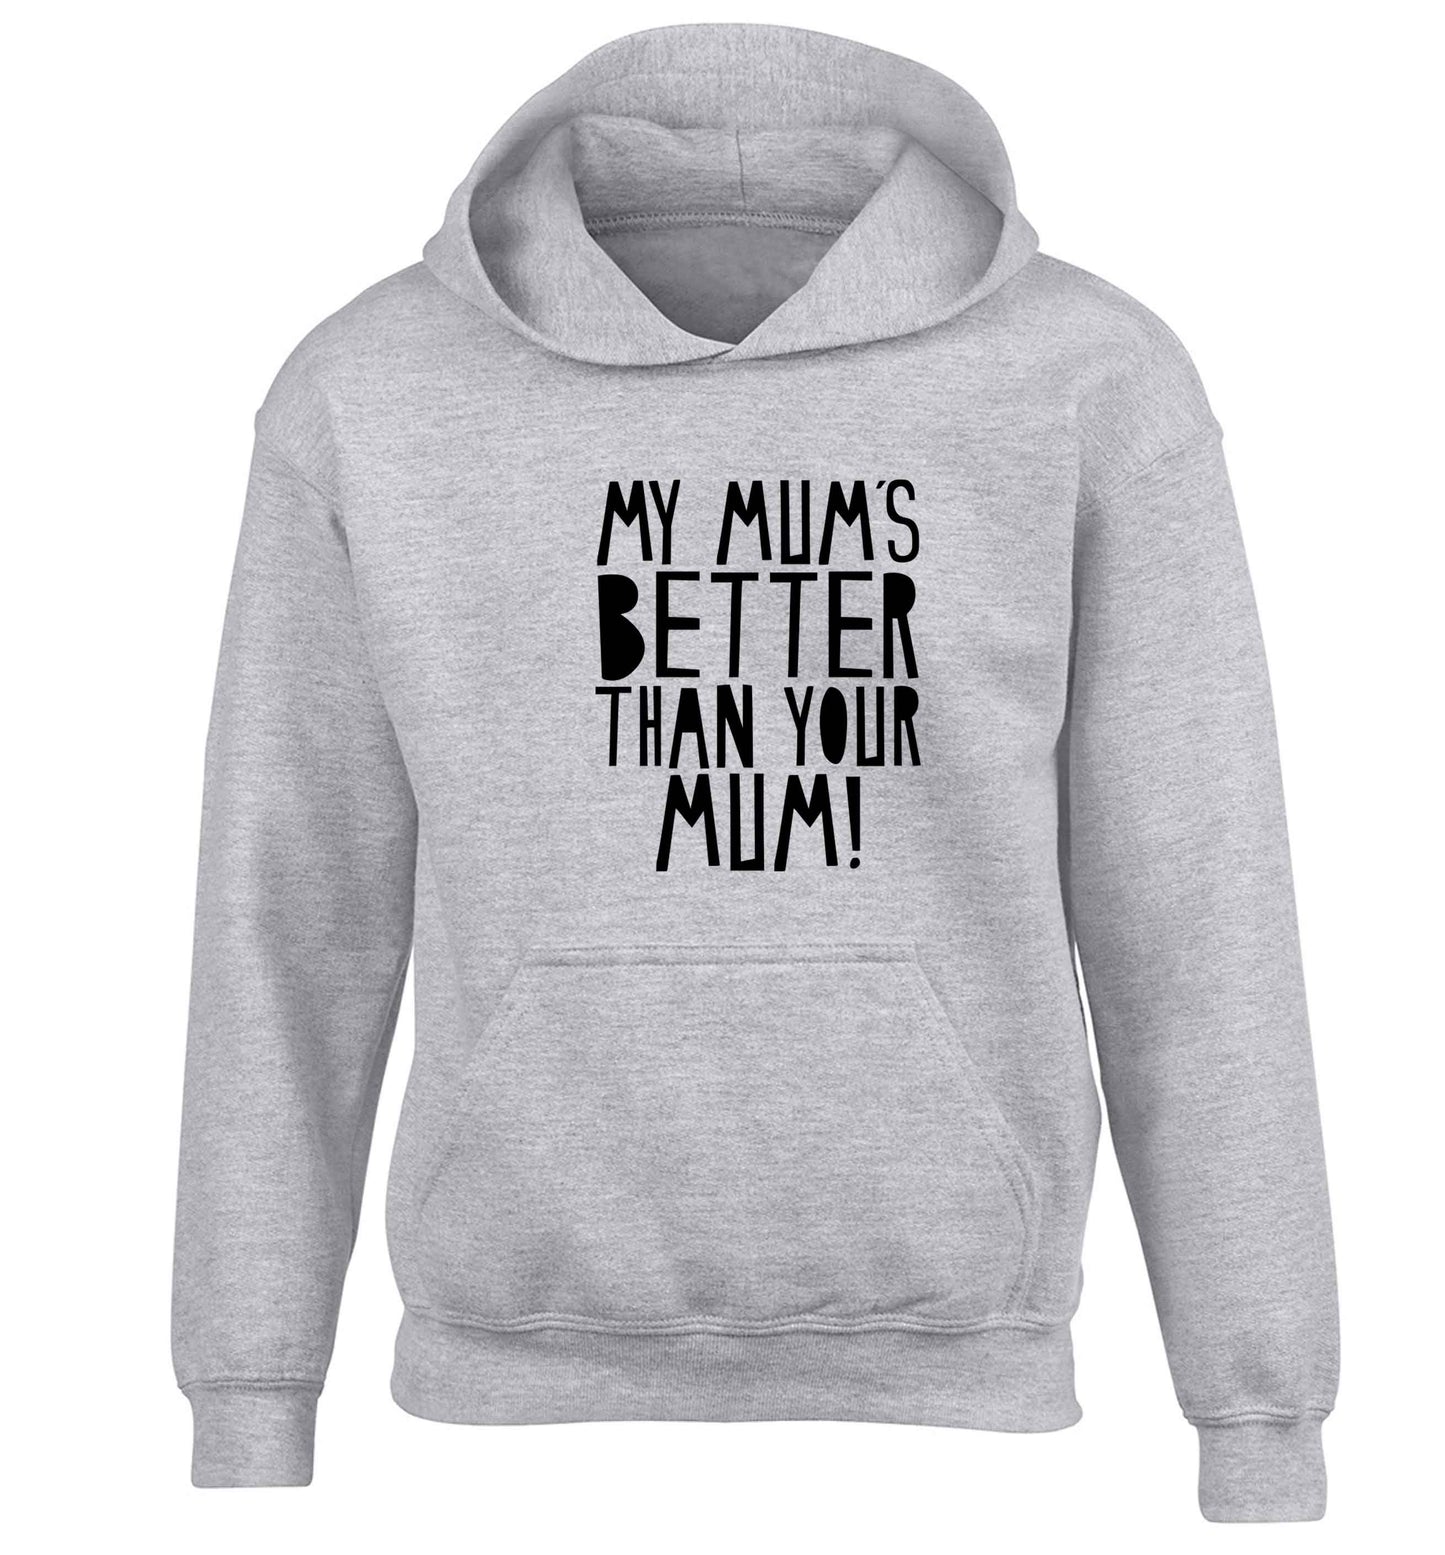 My mum's better than your mum children's grey hoodie 12-13 Years